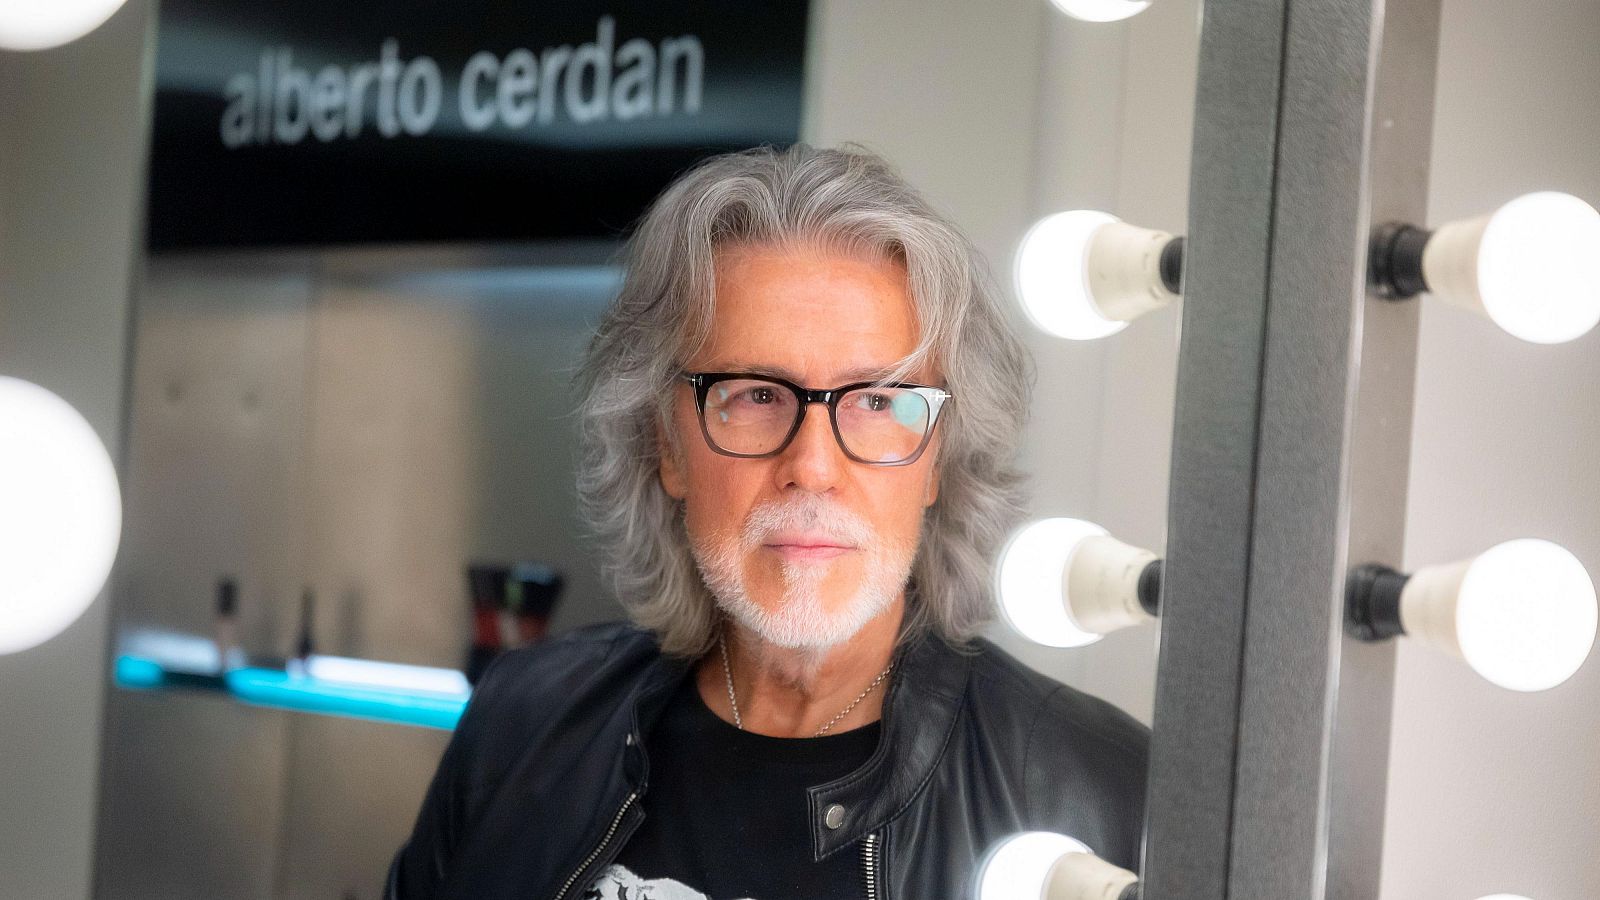 Alberto Cerdán davant d¡un mirall de llums